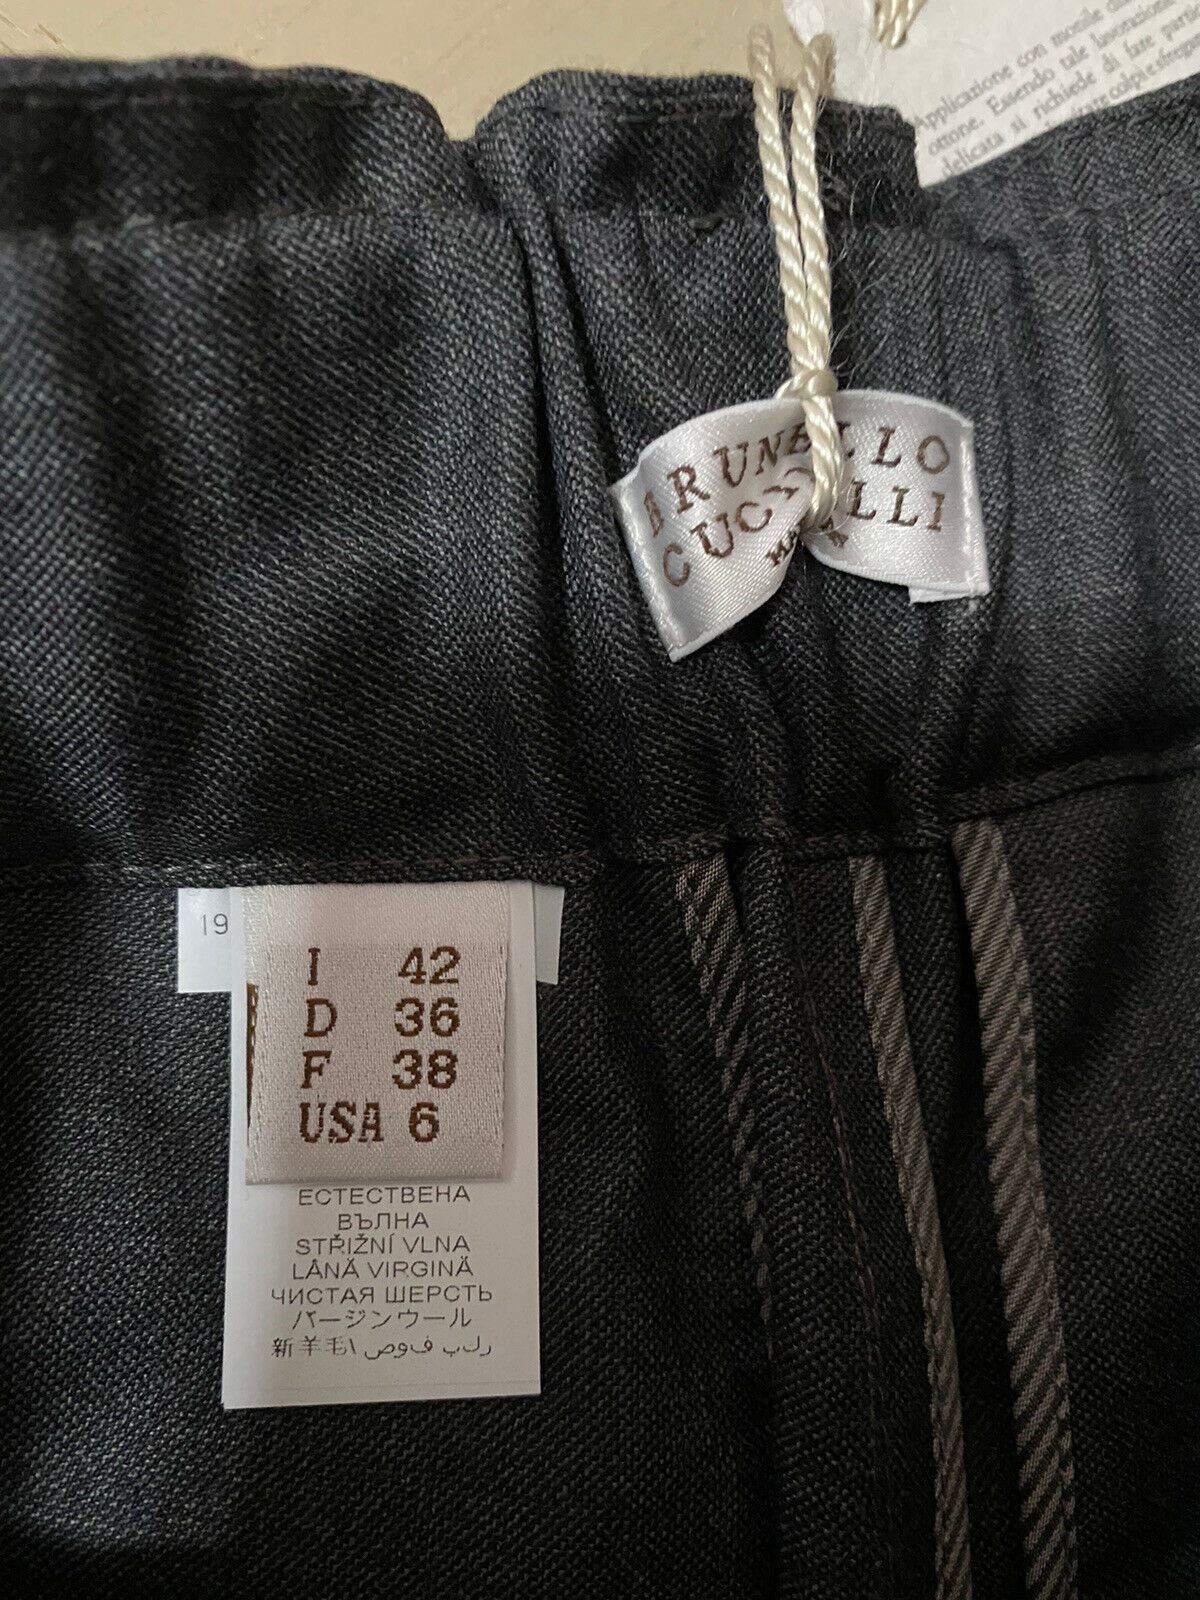 New $1495 Brunello Cucinelli Women Lightweight Wool Pants DK Gray 6 US/42 It